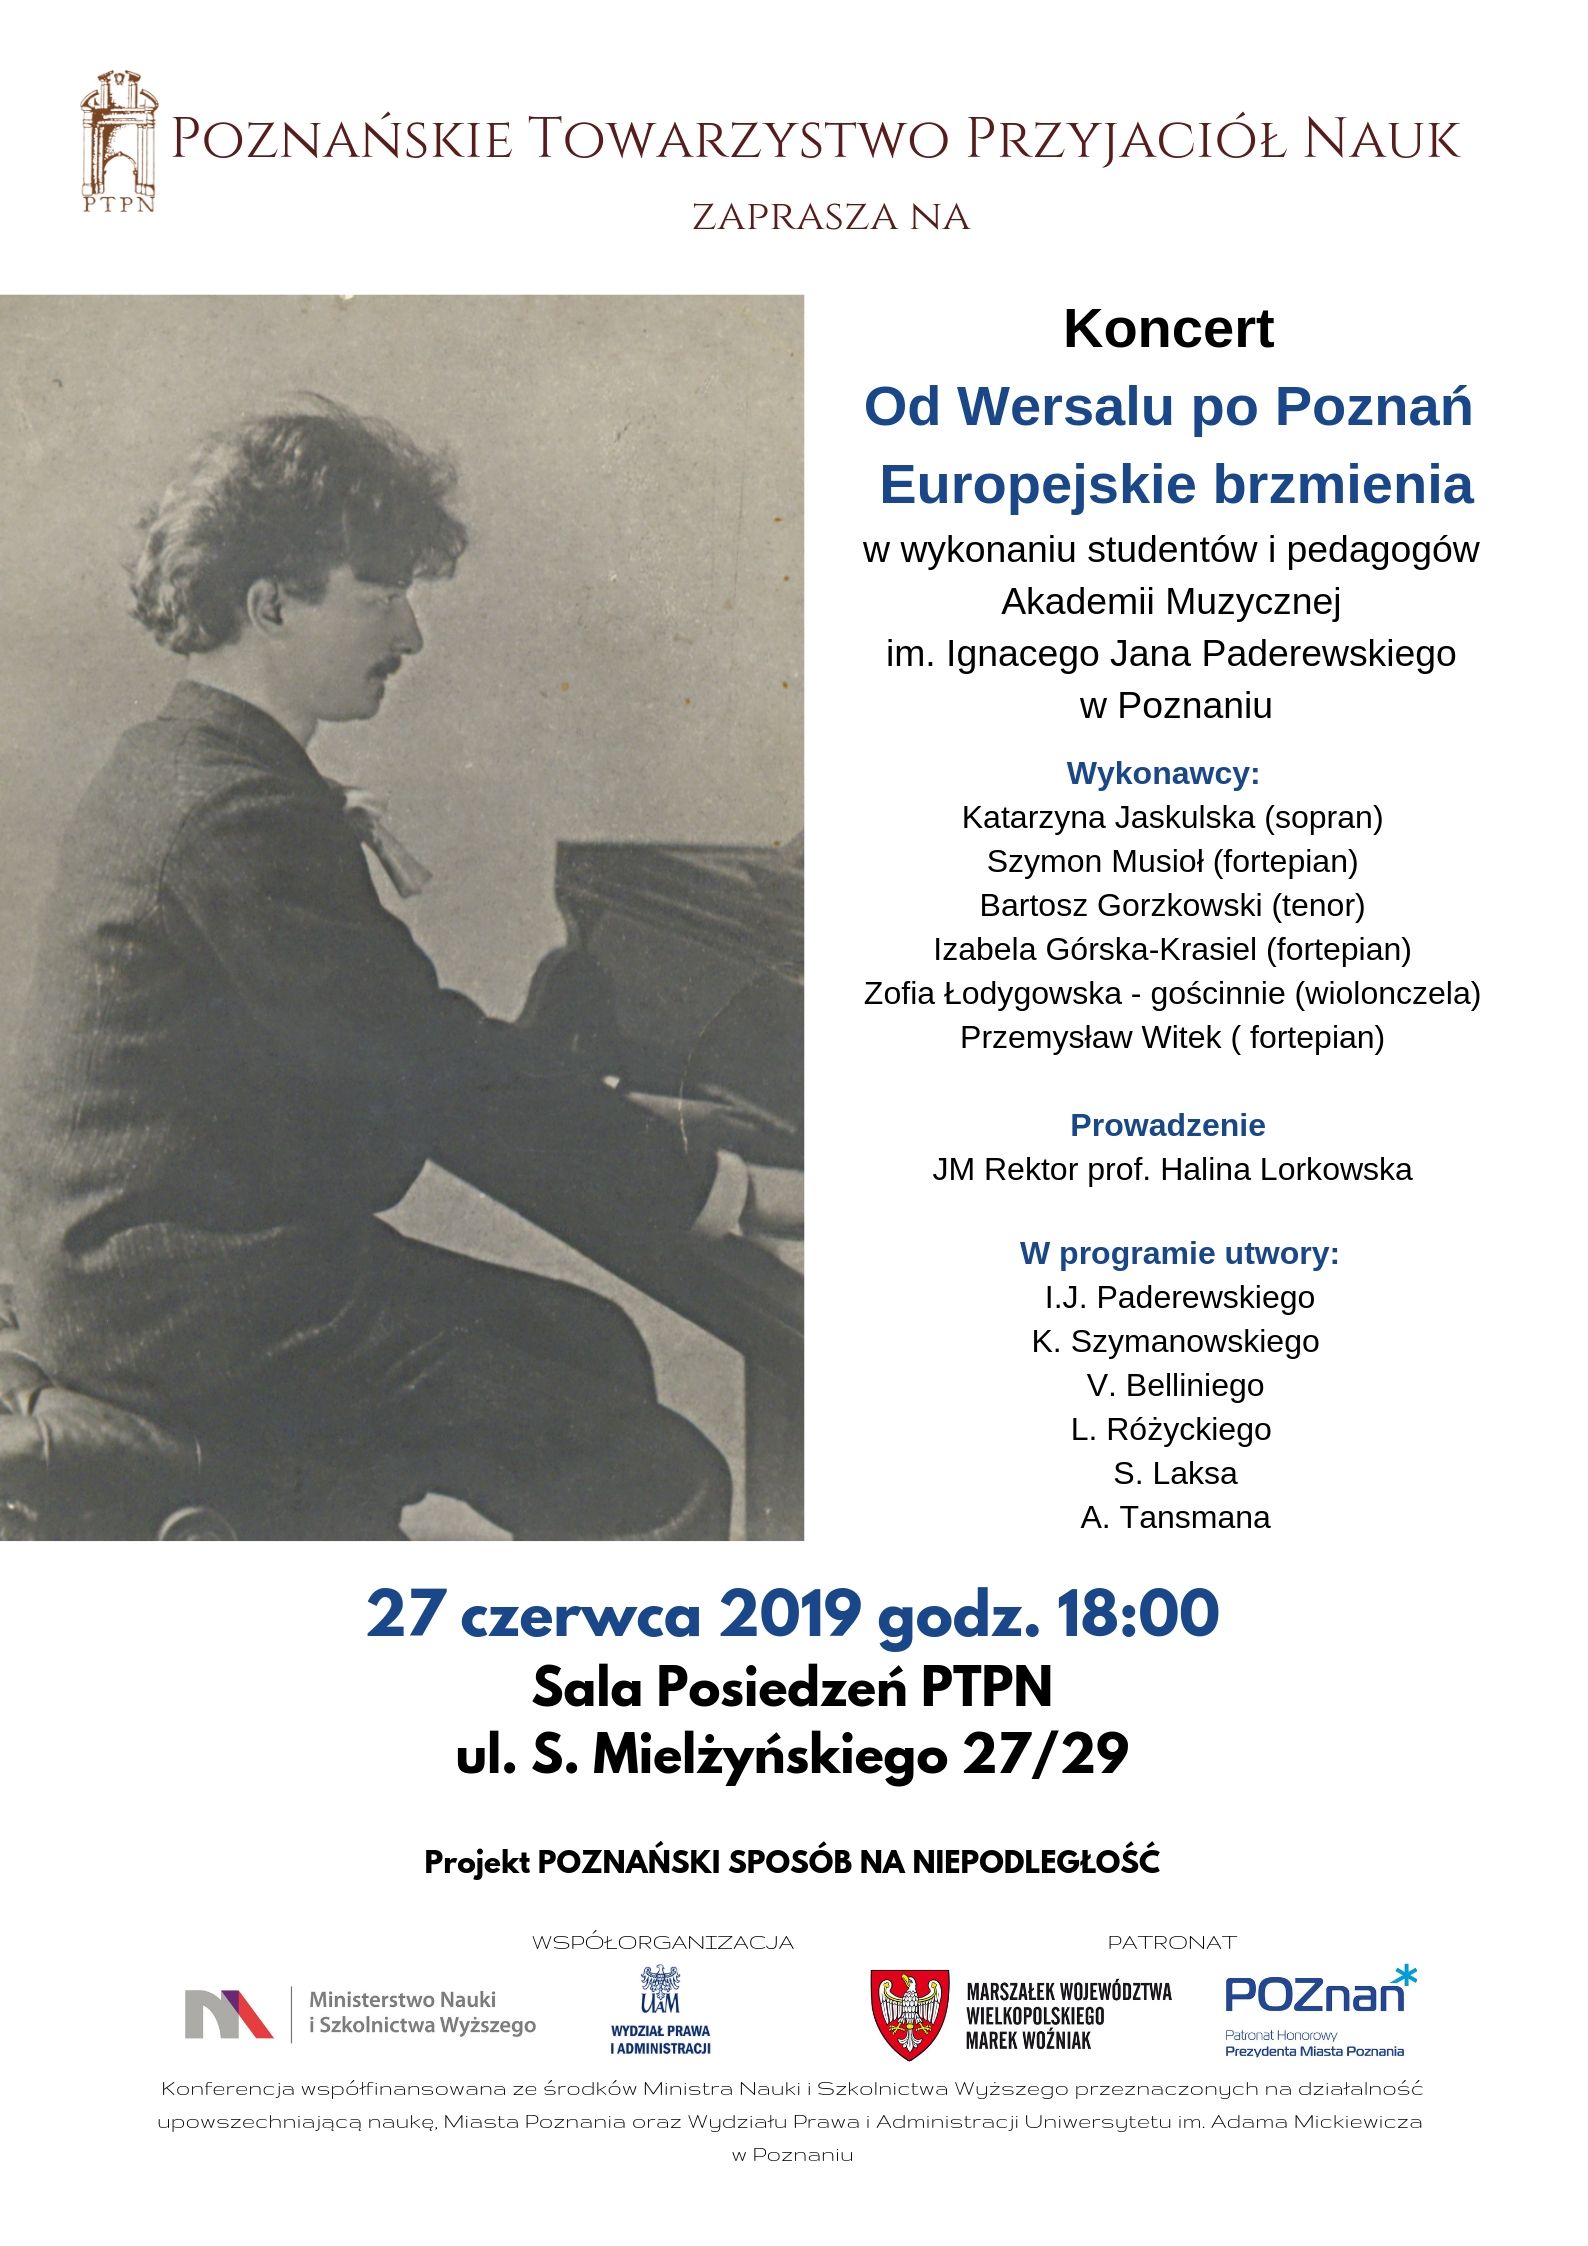 Koncert “Od Wersalu po Poznań. Europejskie brzmienia”